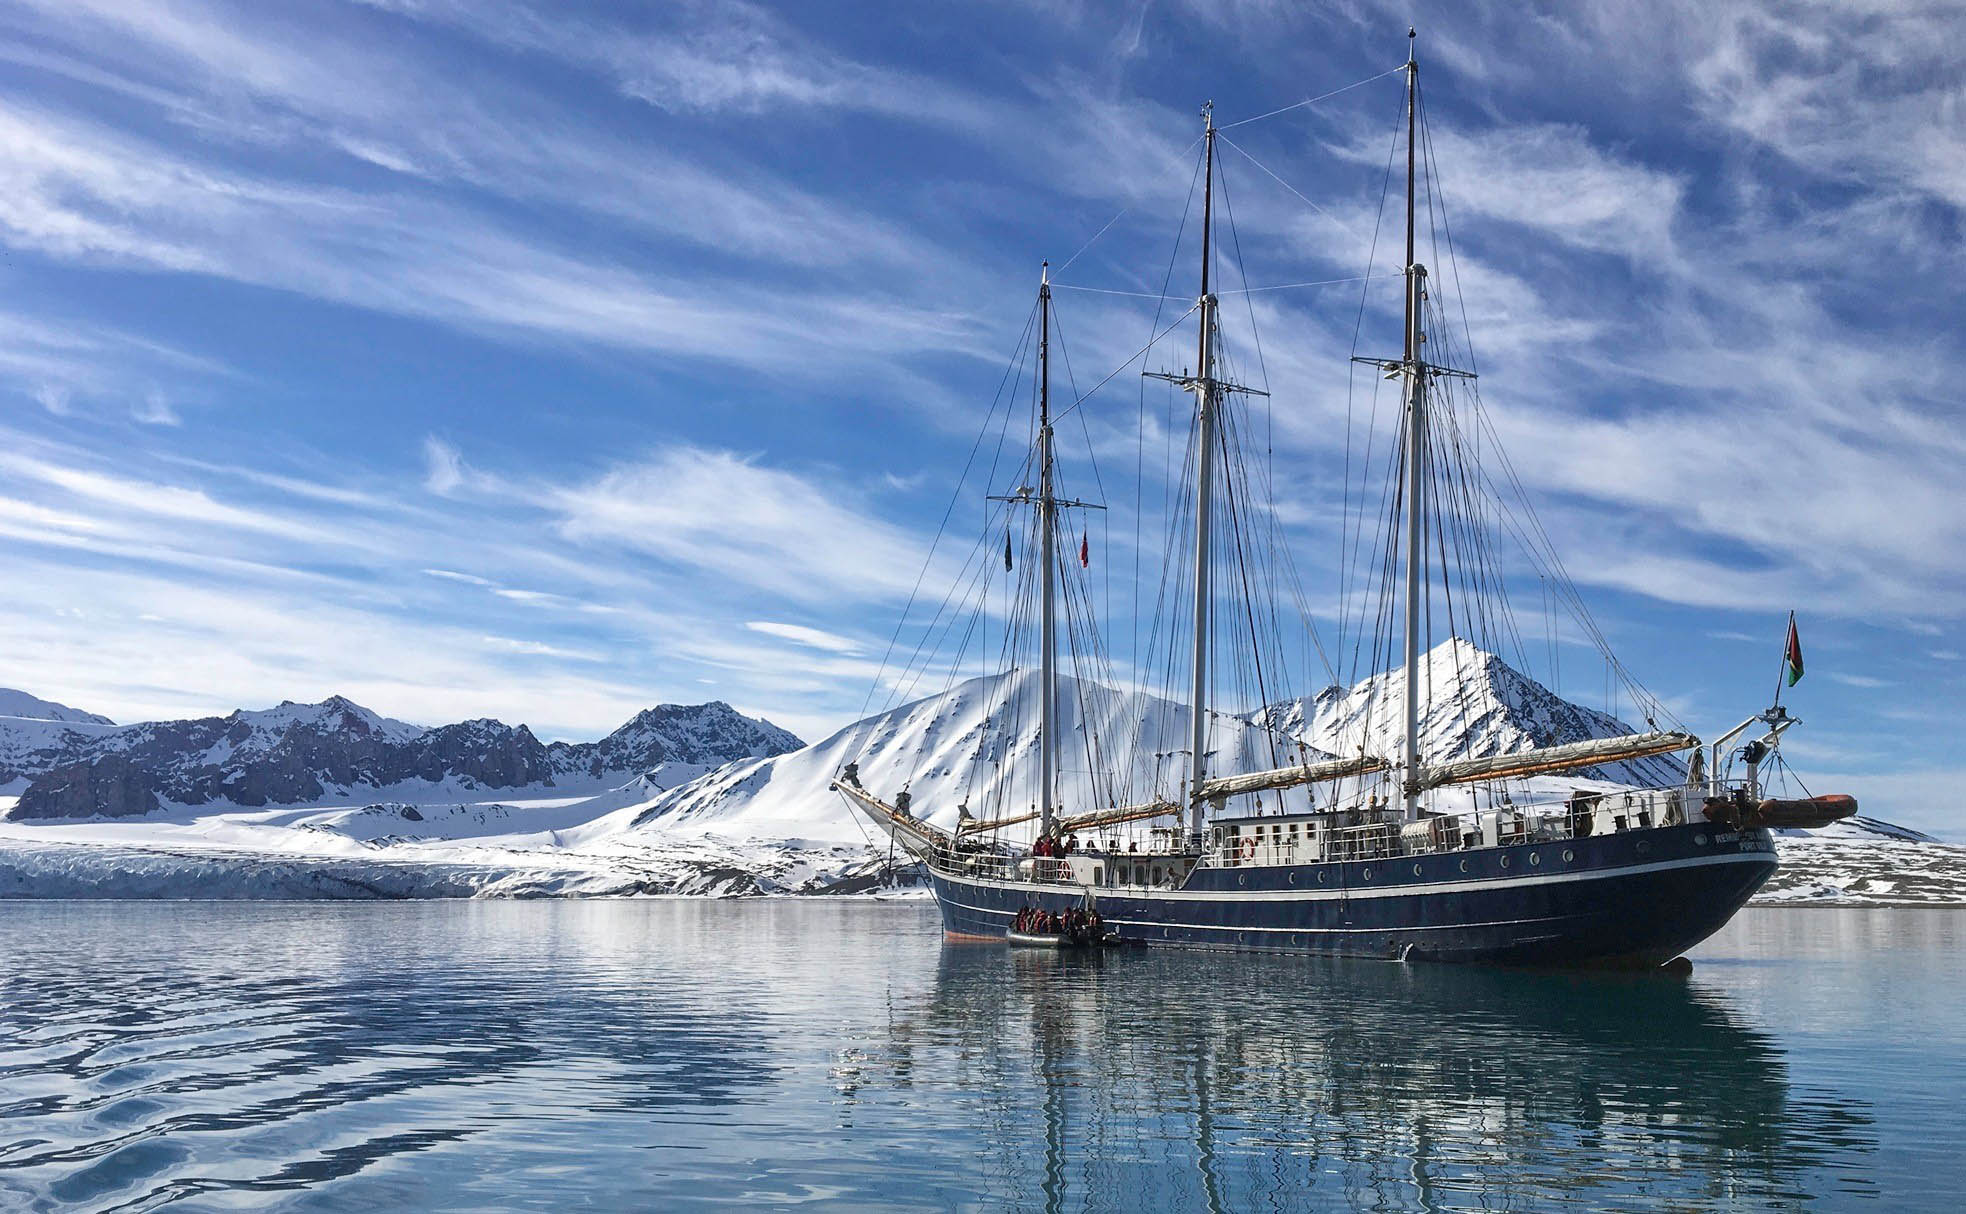 32 Passenger Brigantine in Spitsbergen - Christine Nicol